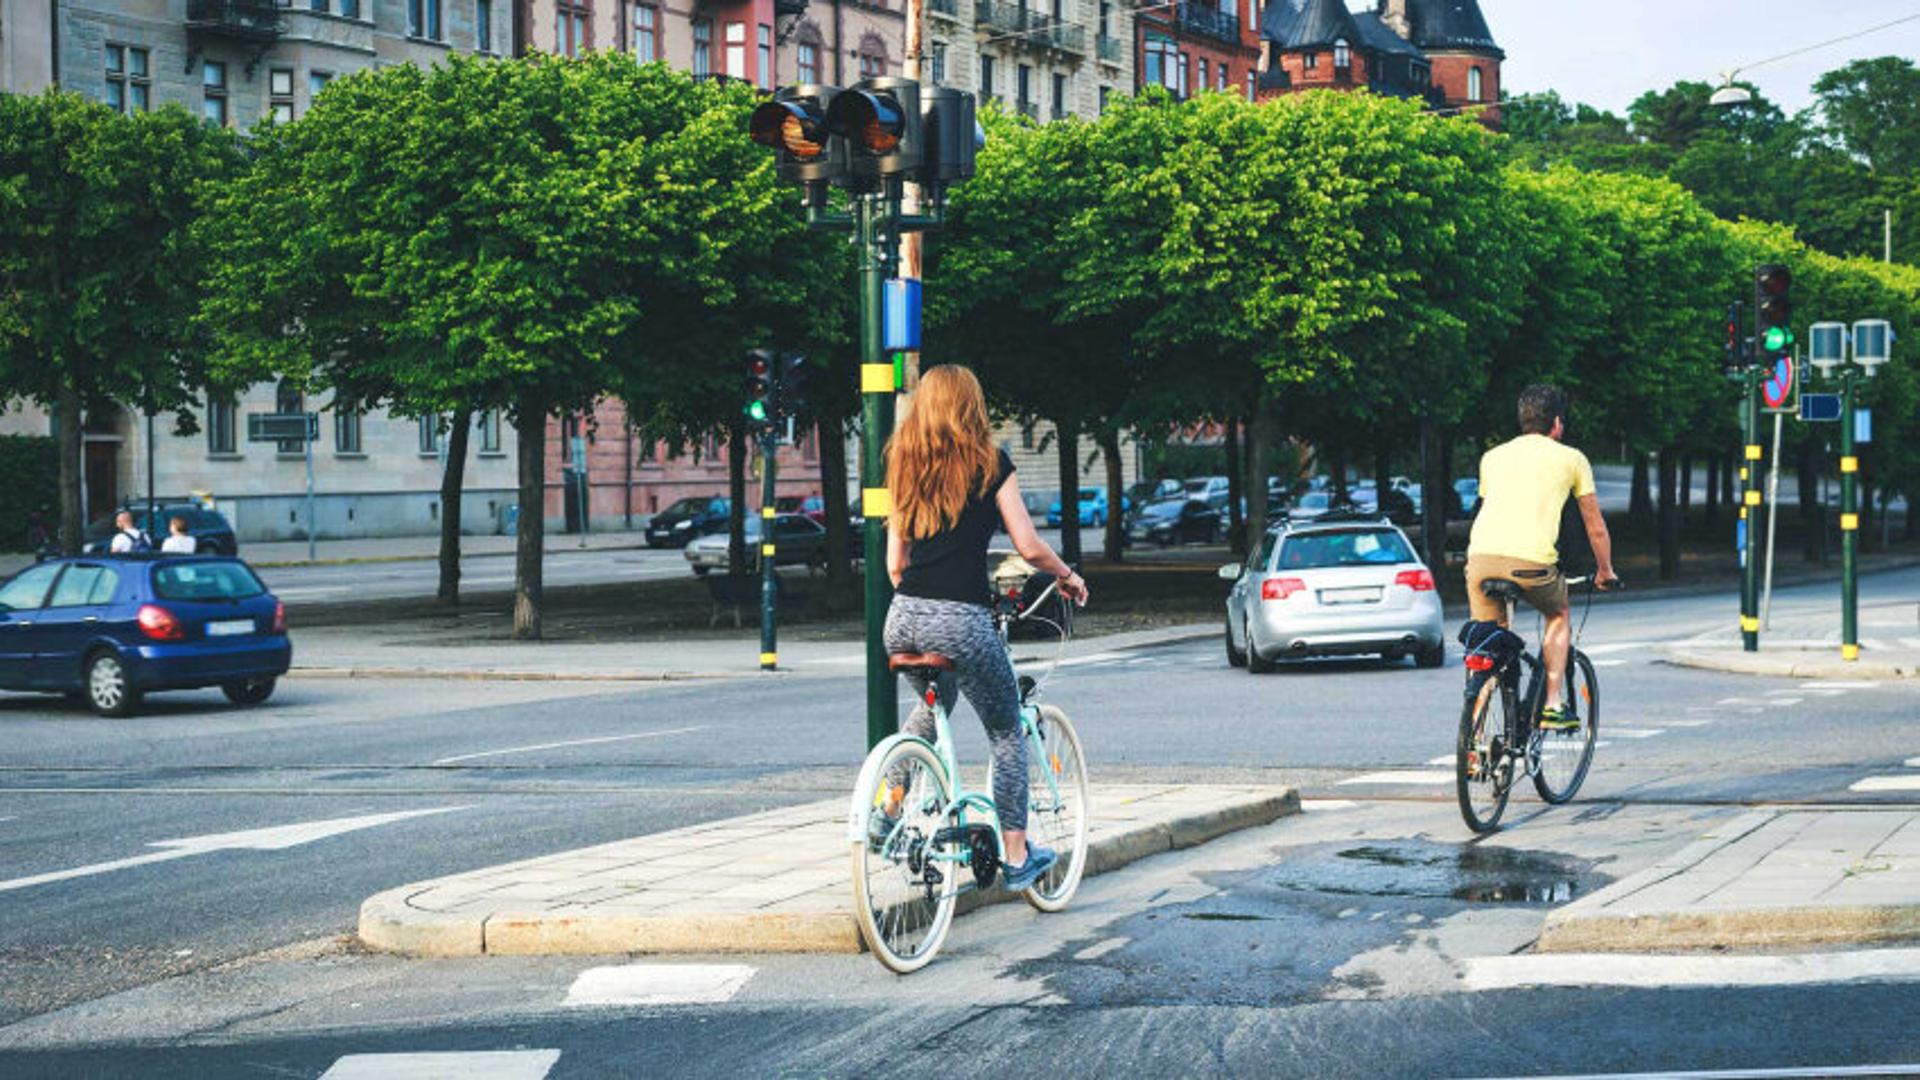 People biking through city